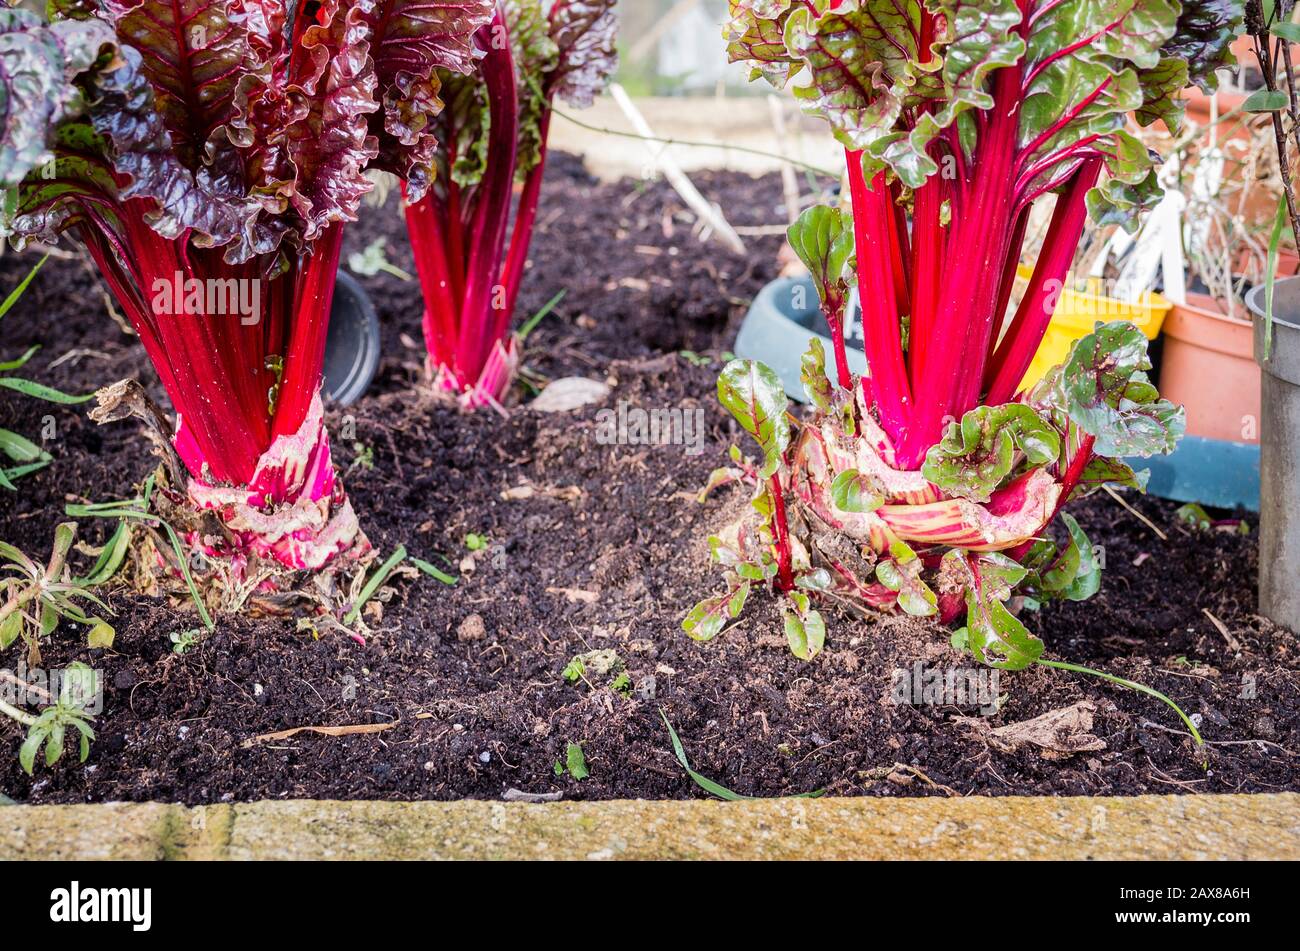 Los tallos comestibles rojos brillantes y las hojas de Swiss o Ruby Chard Galaxy F1 creciendo en una plantadora levantada cerca de la casa y proporcionando alimentos saludables a mediados del invierno Foto de stock